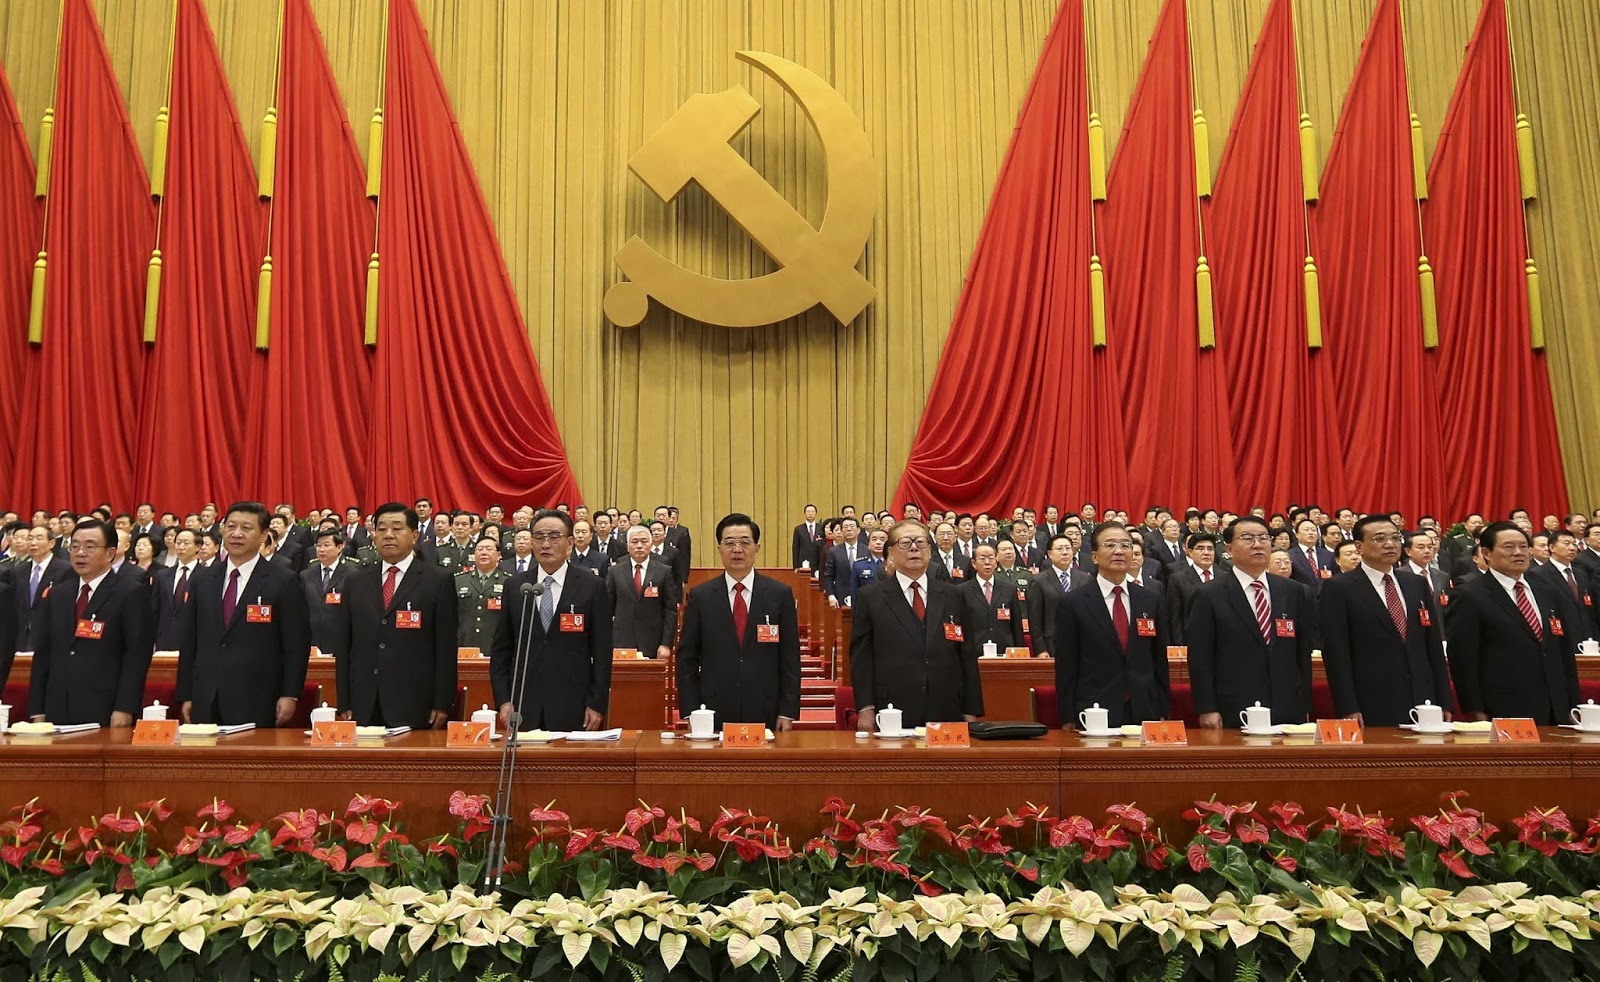 e3fdd-an-group-photo-china-communist-party-congress-data.jpg